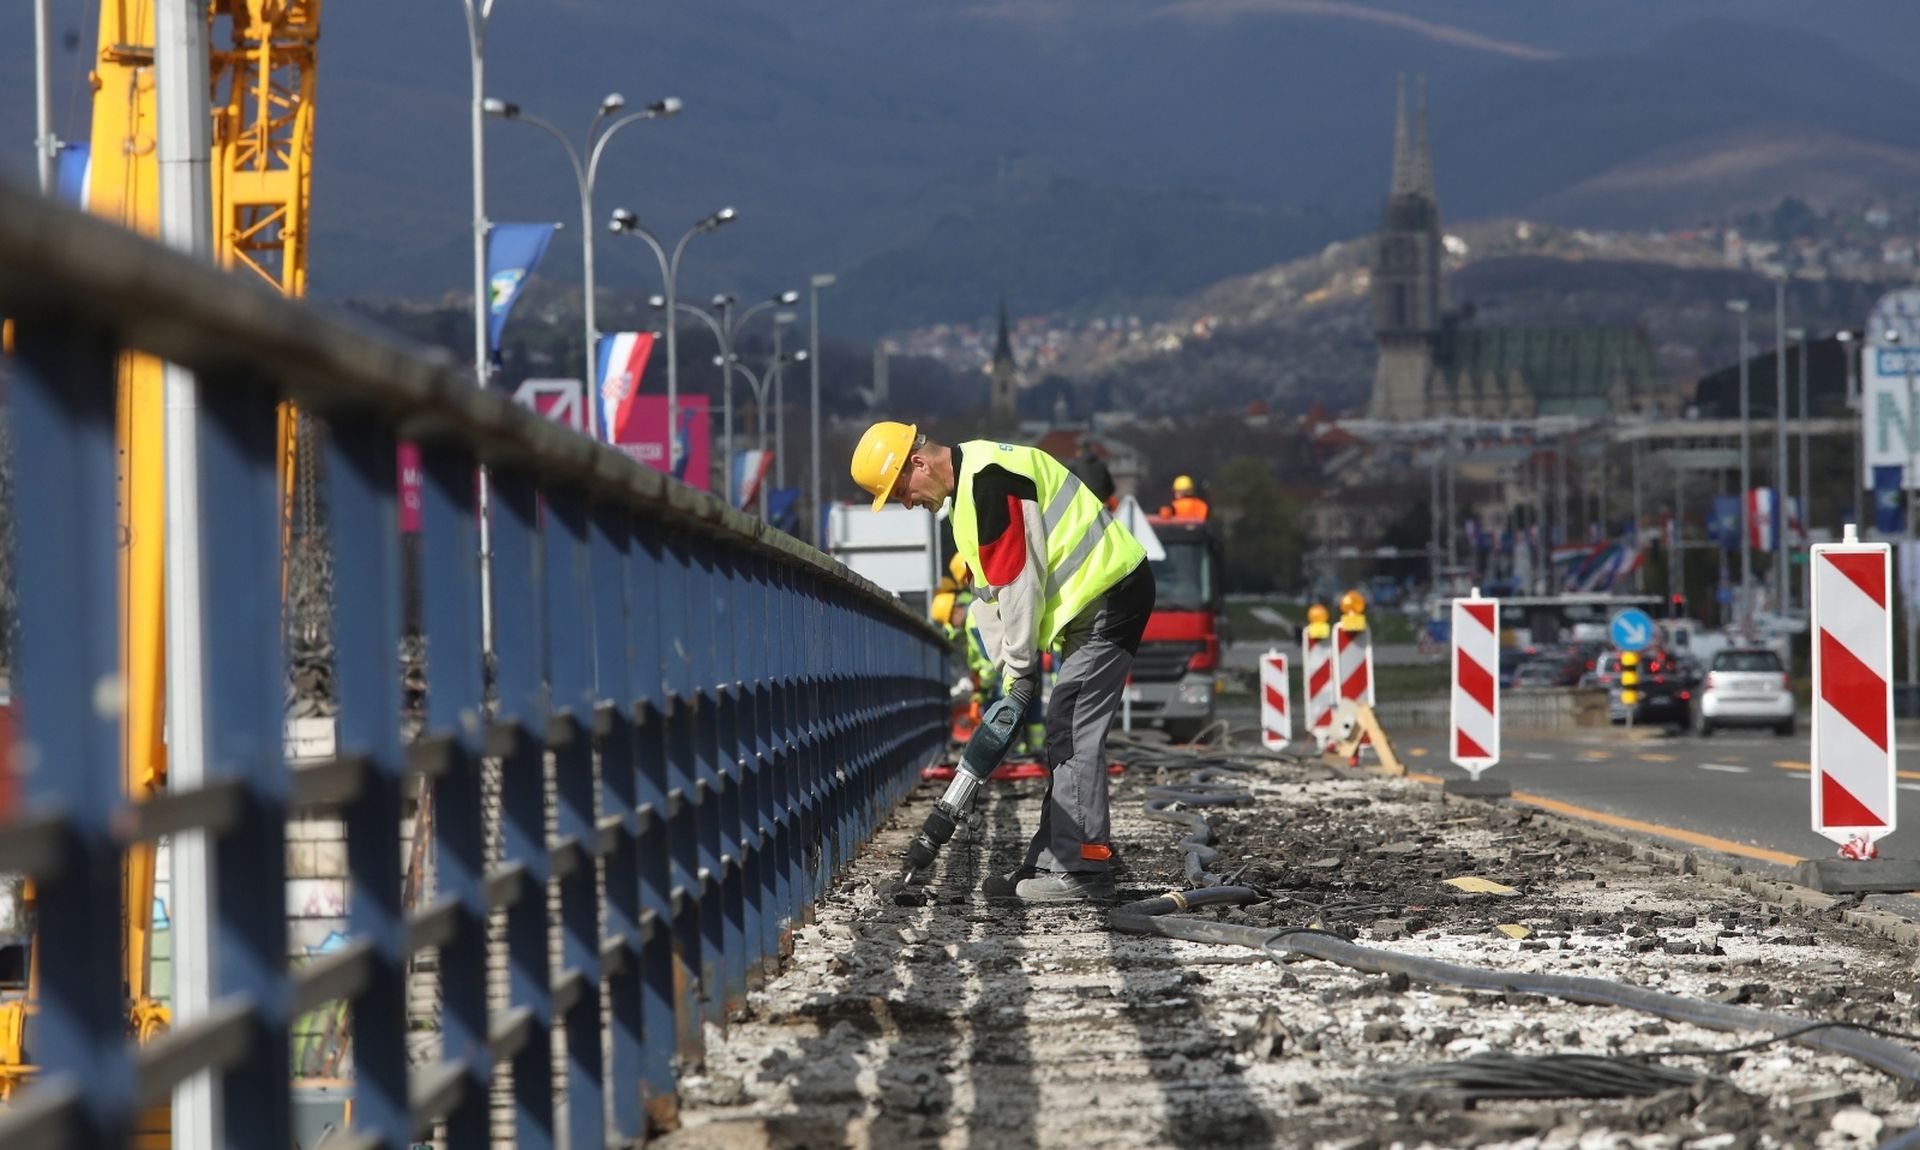 Zagreb: Radovi na sanaciji Mosta slobode 26.03.2019.,Zagreb - Radovi na sanaciji Mosta slobode.
Photo:Boris Scitar/Vecernji list/PIXSELL